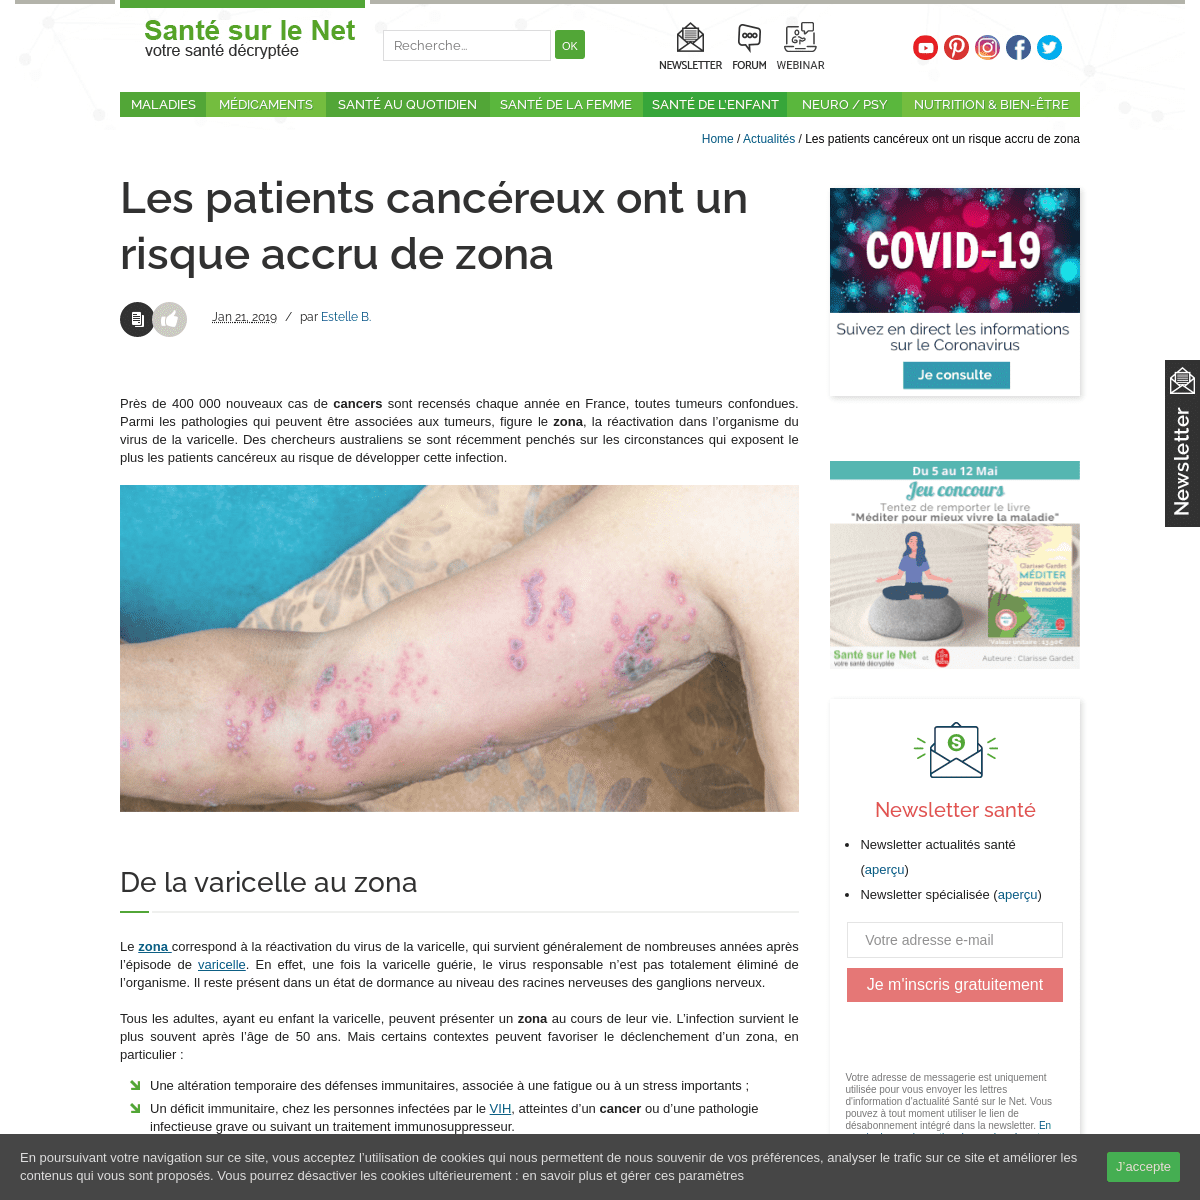 A complete backup of https://www.sante-sur-le-net.com/cancer-et-zona/